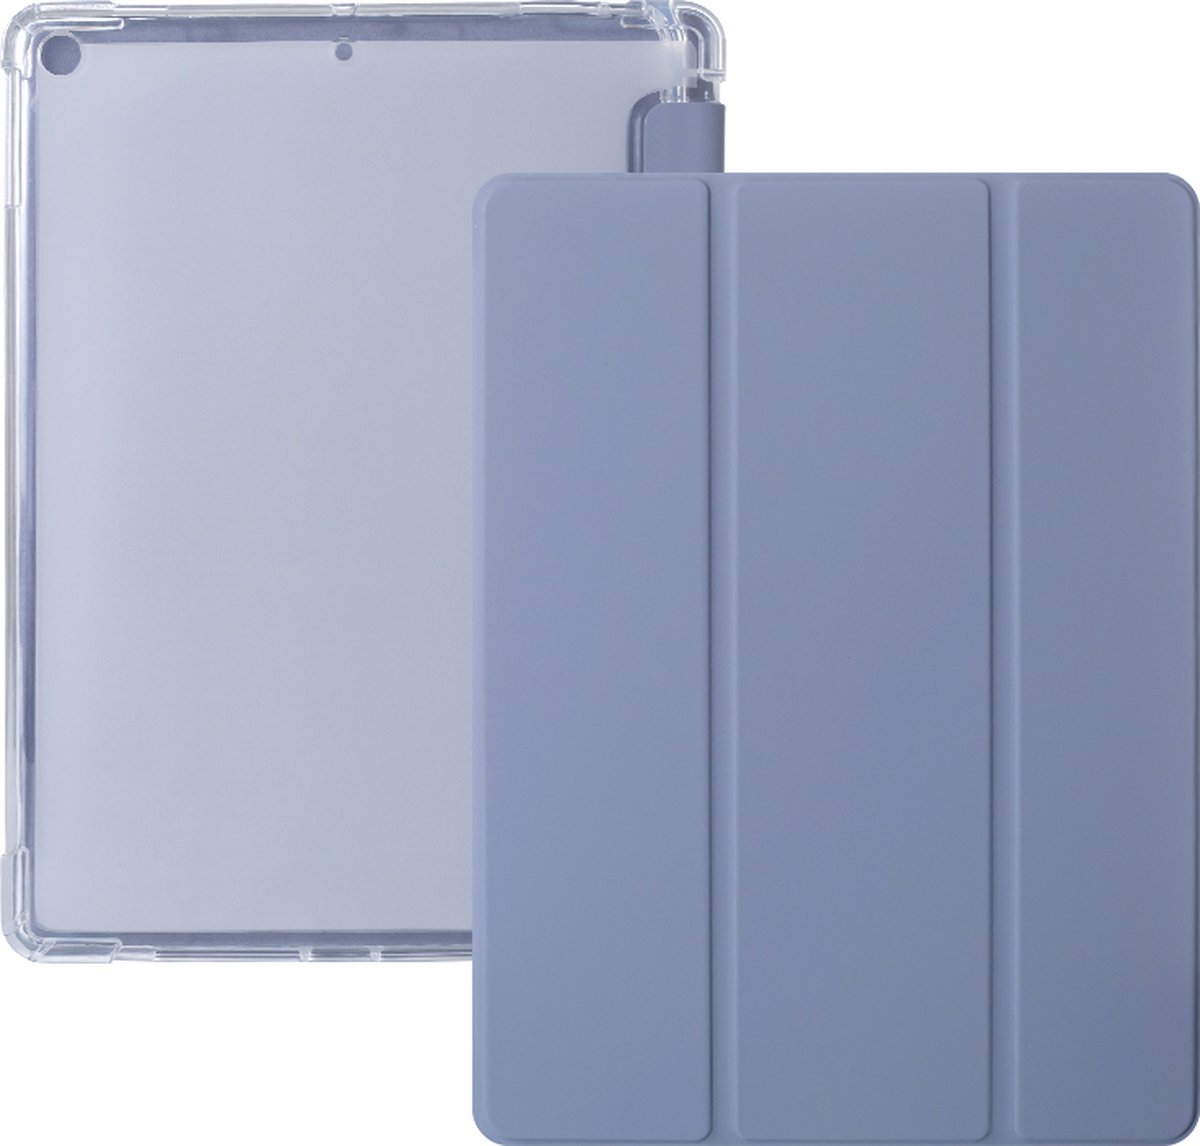 iPad 2021 Hoes - iPad 10.2 2019/2020/2021 Case - iPad 10.2 Hoesje Paars - Clear Back Folio Cover met Apple Pencil Opbergvak - Hoesje voor iPad 10.2 7e, 8e en 9e generatie